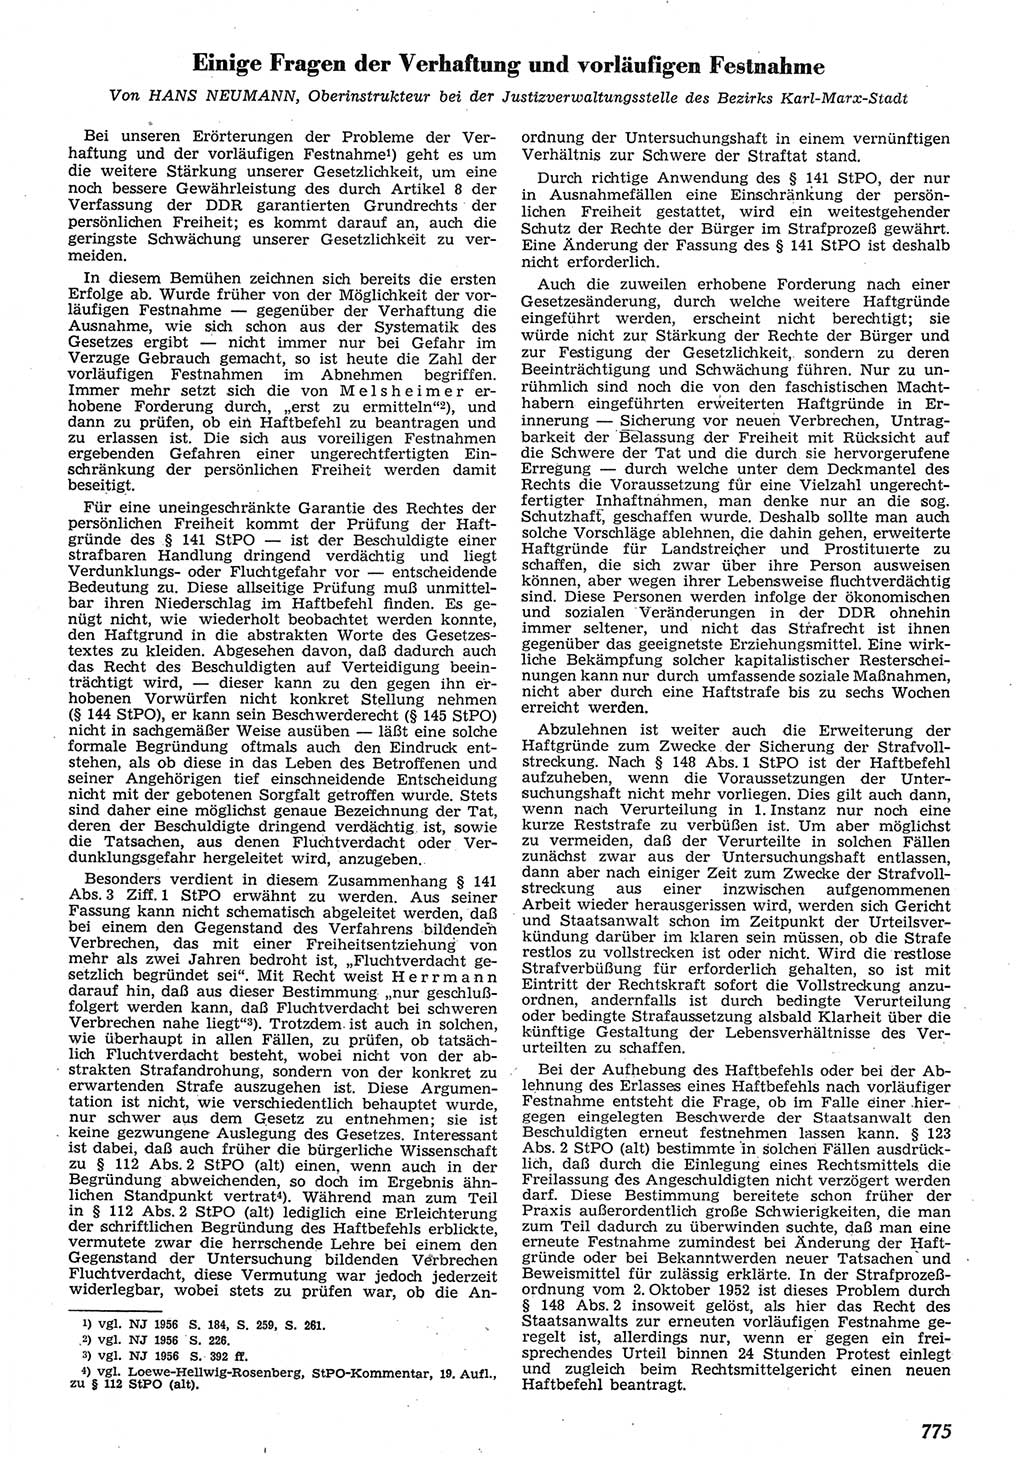 Neue Justiz (NJ), Zeitschrift für Recht und Rechtswissenschaft [Deutsche Demokratische Republik (DDR)], 10. Jahrgang 1956, Seite 775 (NJ DDR 1956, S. 775)